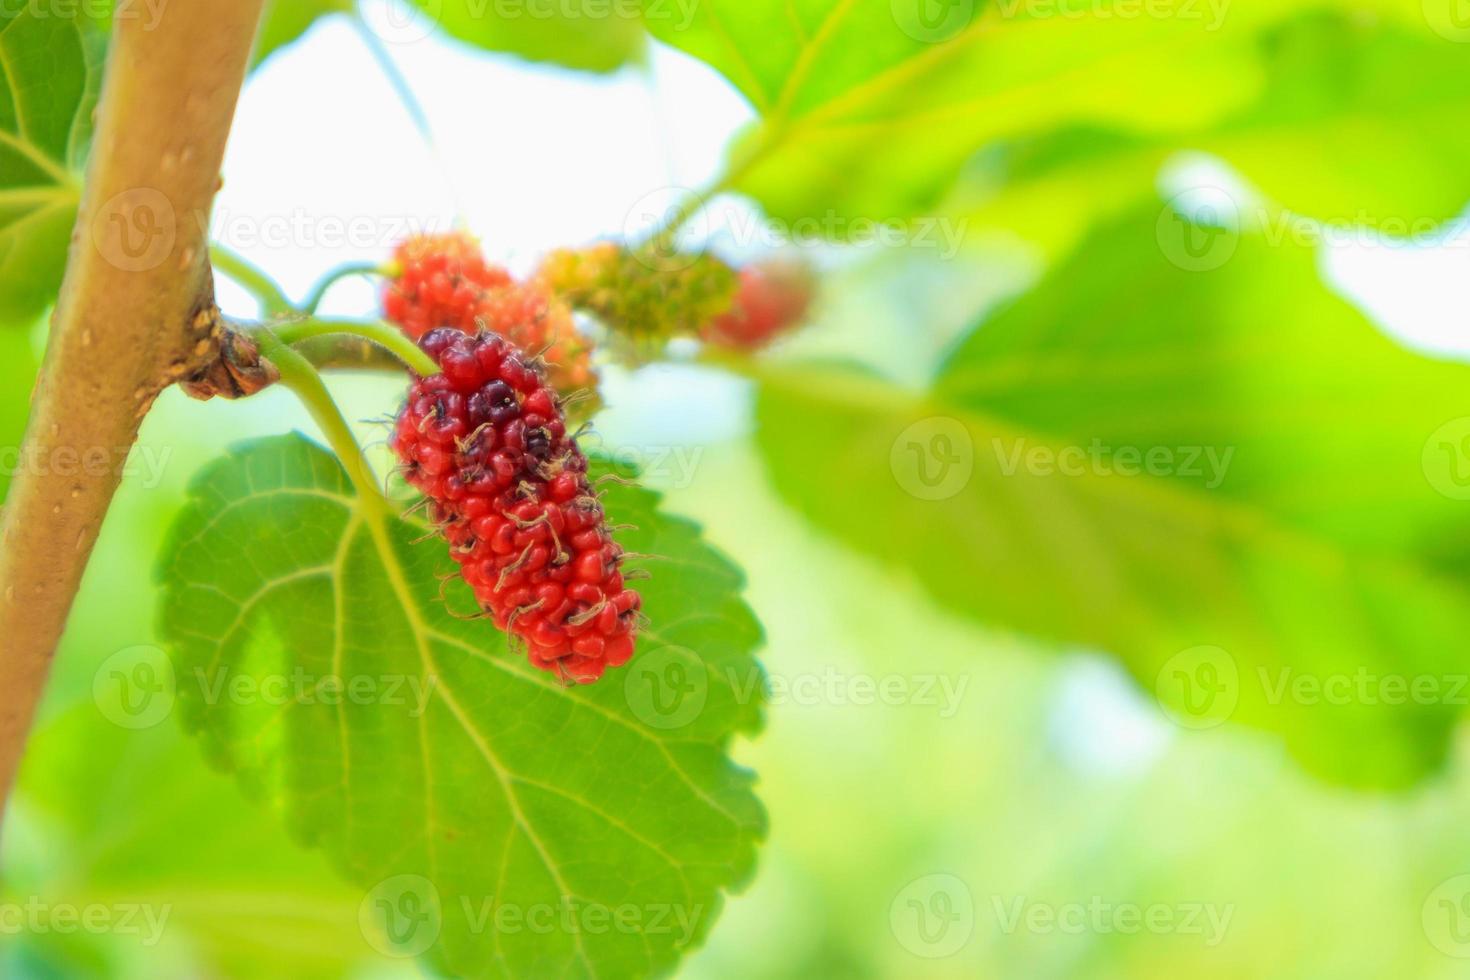 färska röda mullbärsfrukter på trädgren foto